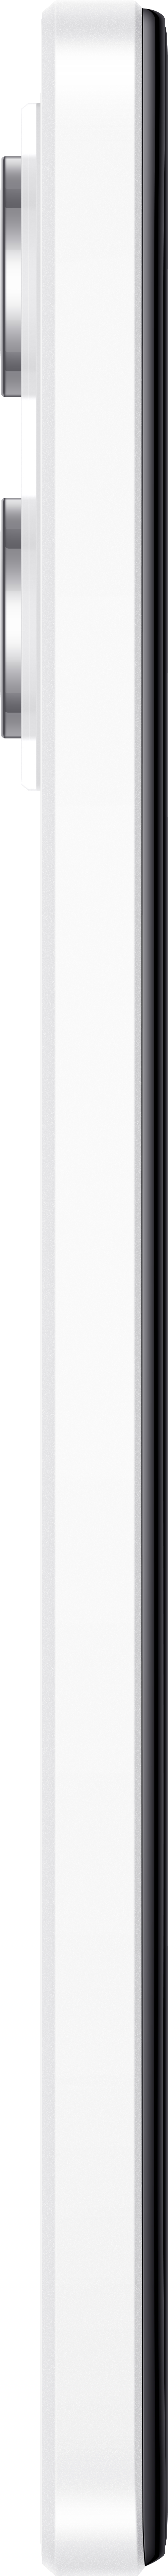 XIAOMI Pro SIM 5G Dual Note Redmi GB Polar 128 White 12